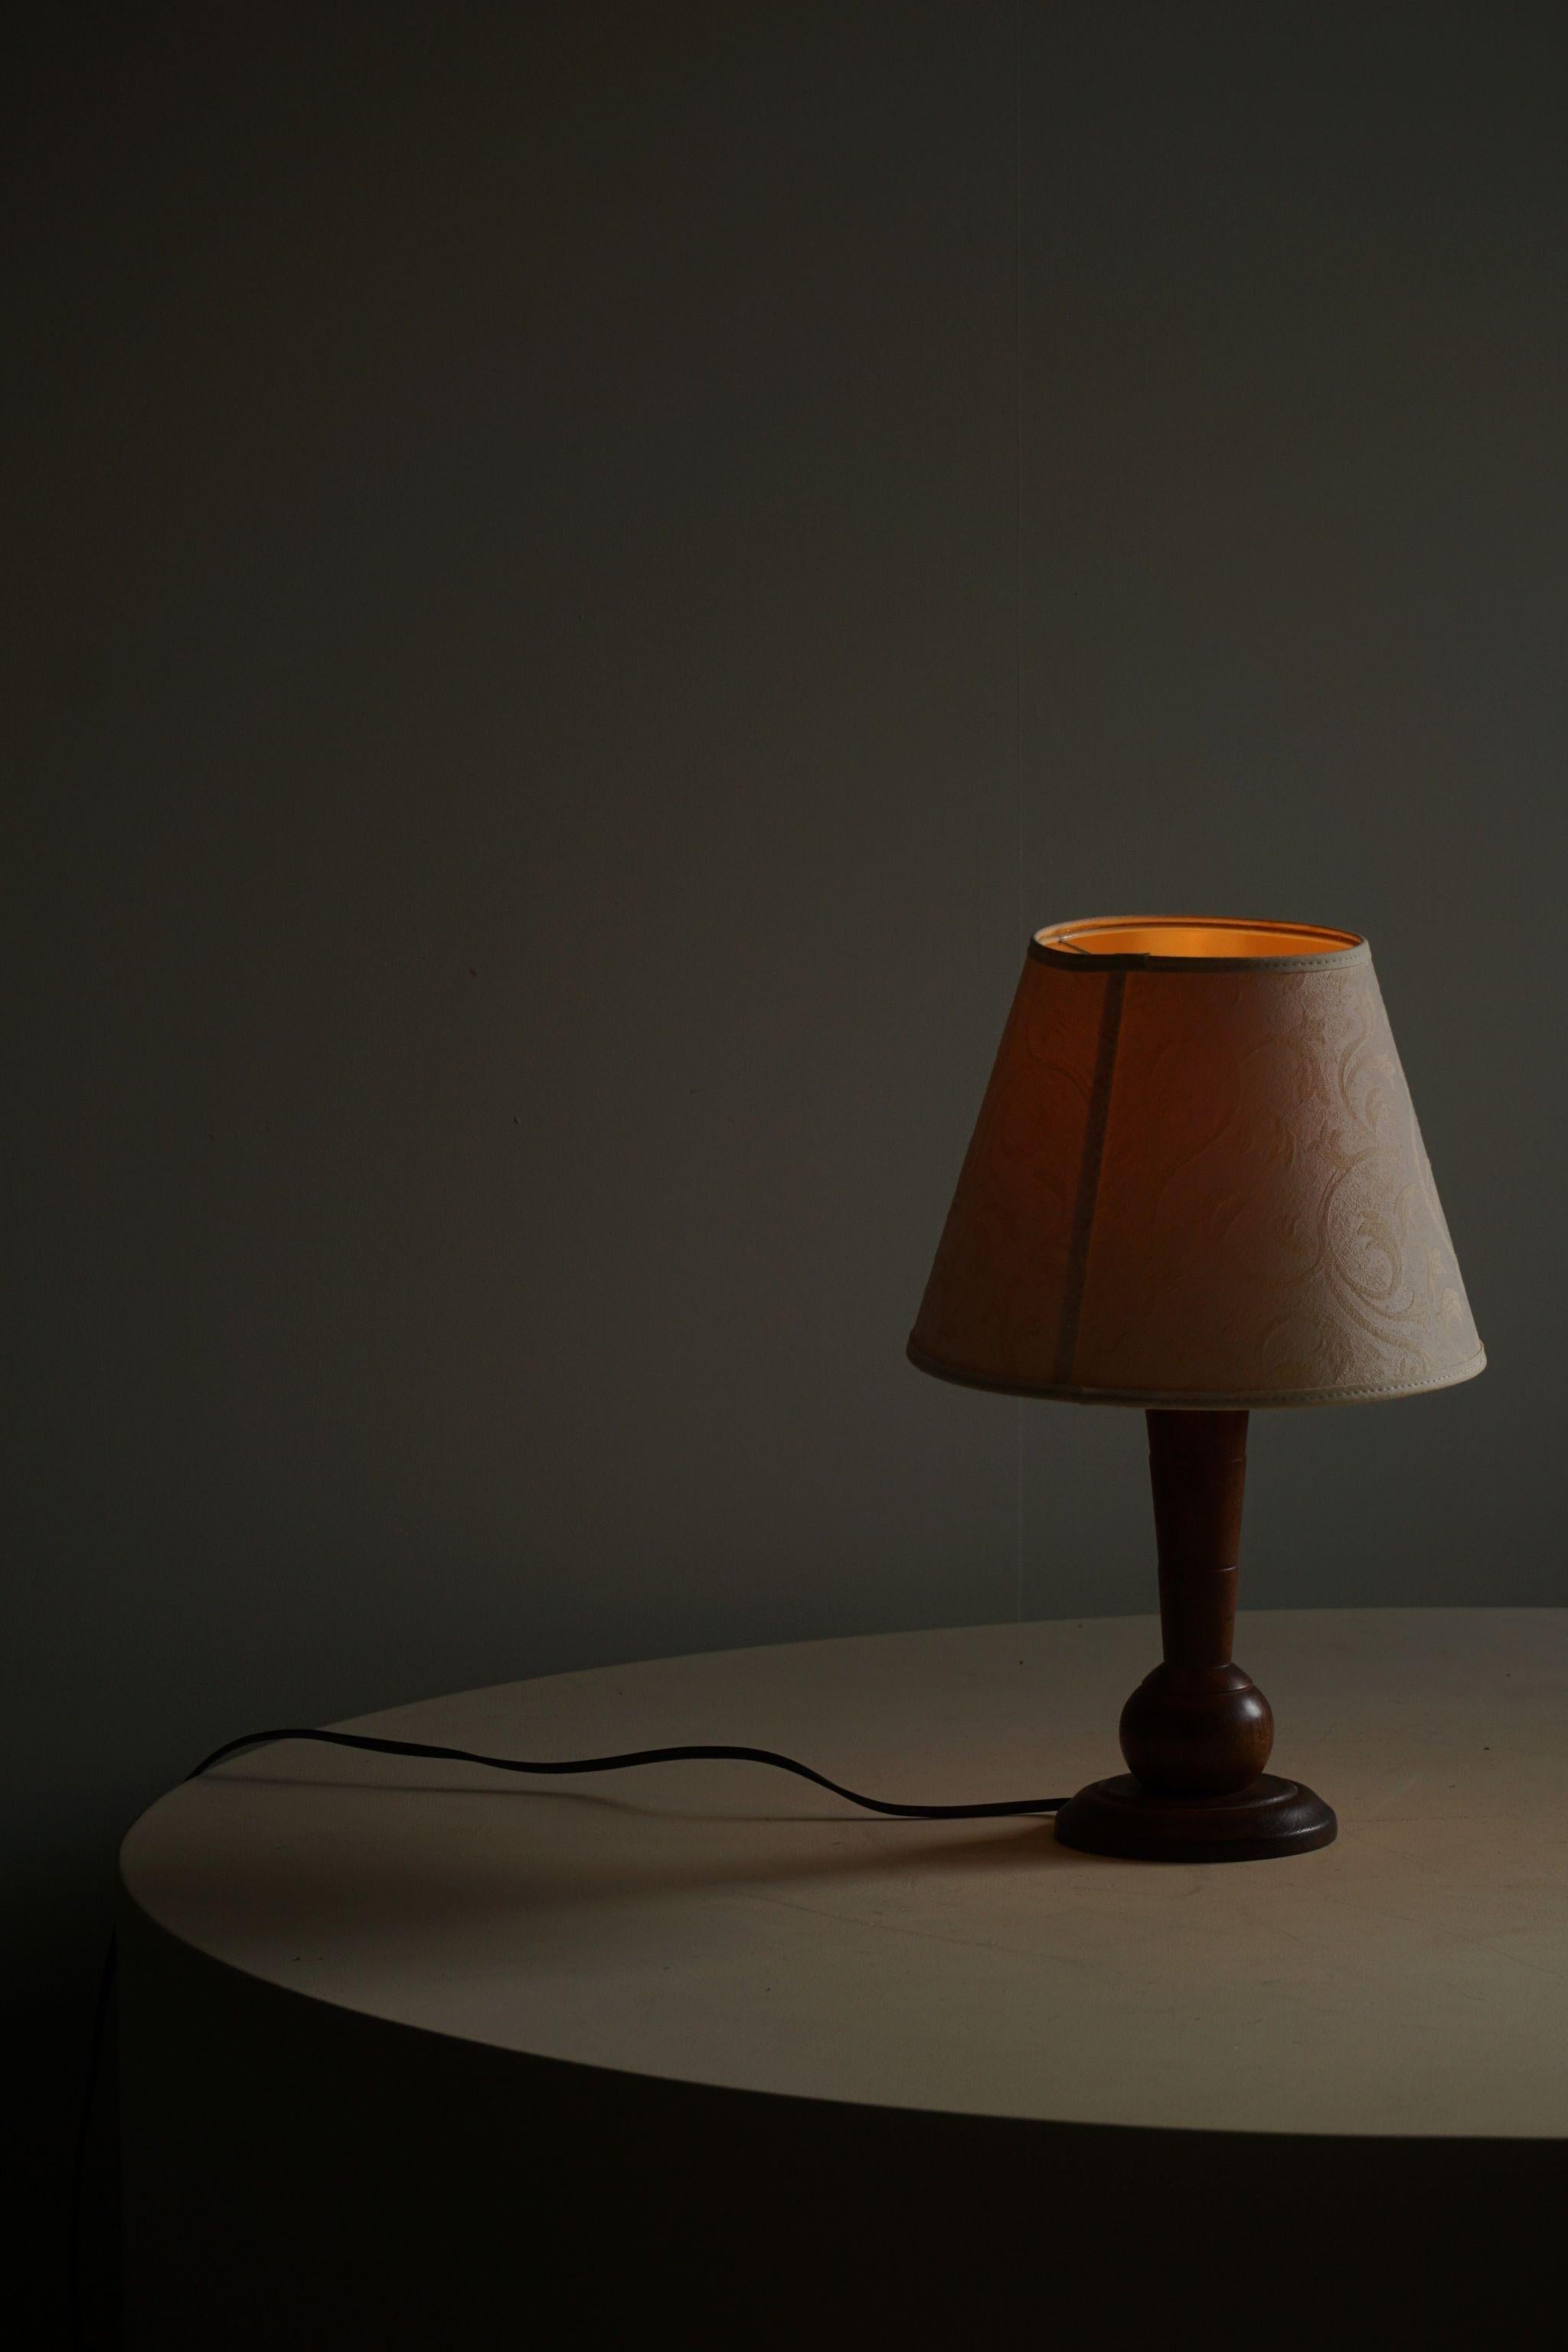 Lampe de table en teck du milieu du 20e siècle. Fabriqué au Danemark dans les années 1940. Une belle forme qui complète l'impression générale de cette lampe de table Art déco.

